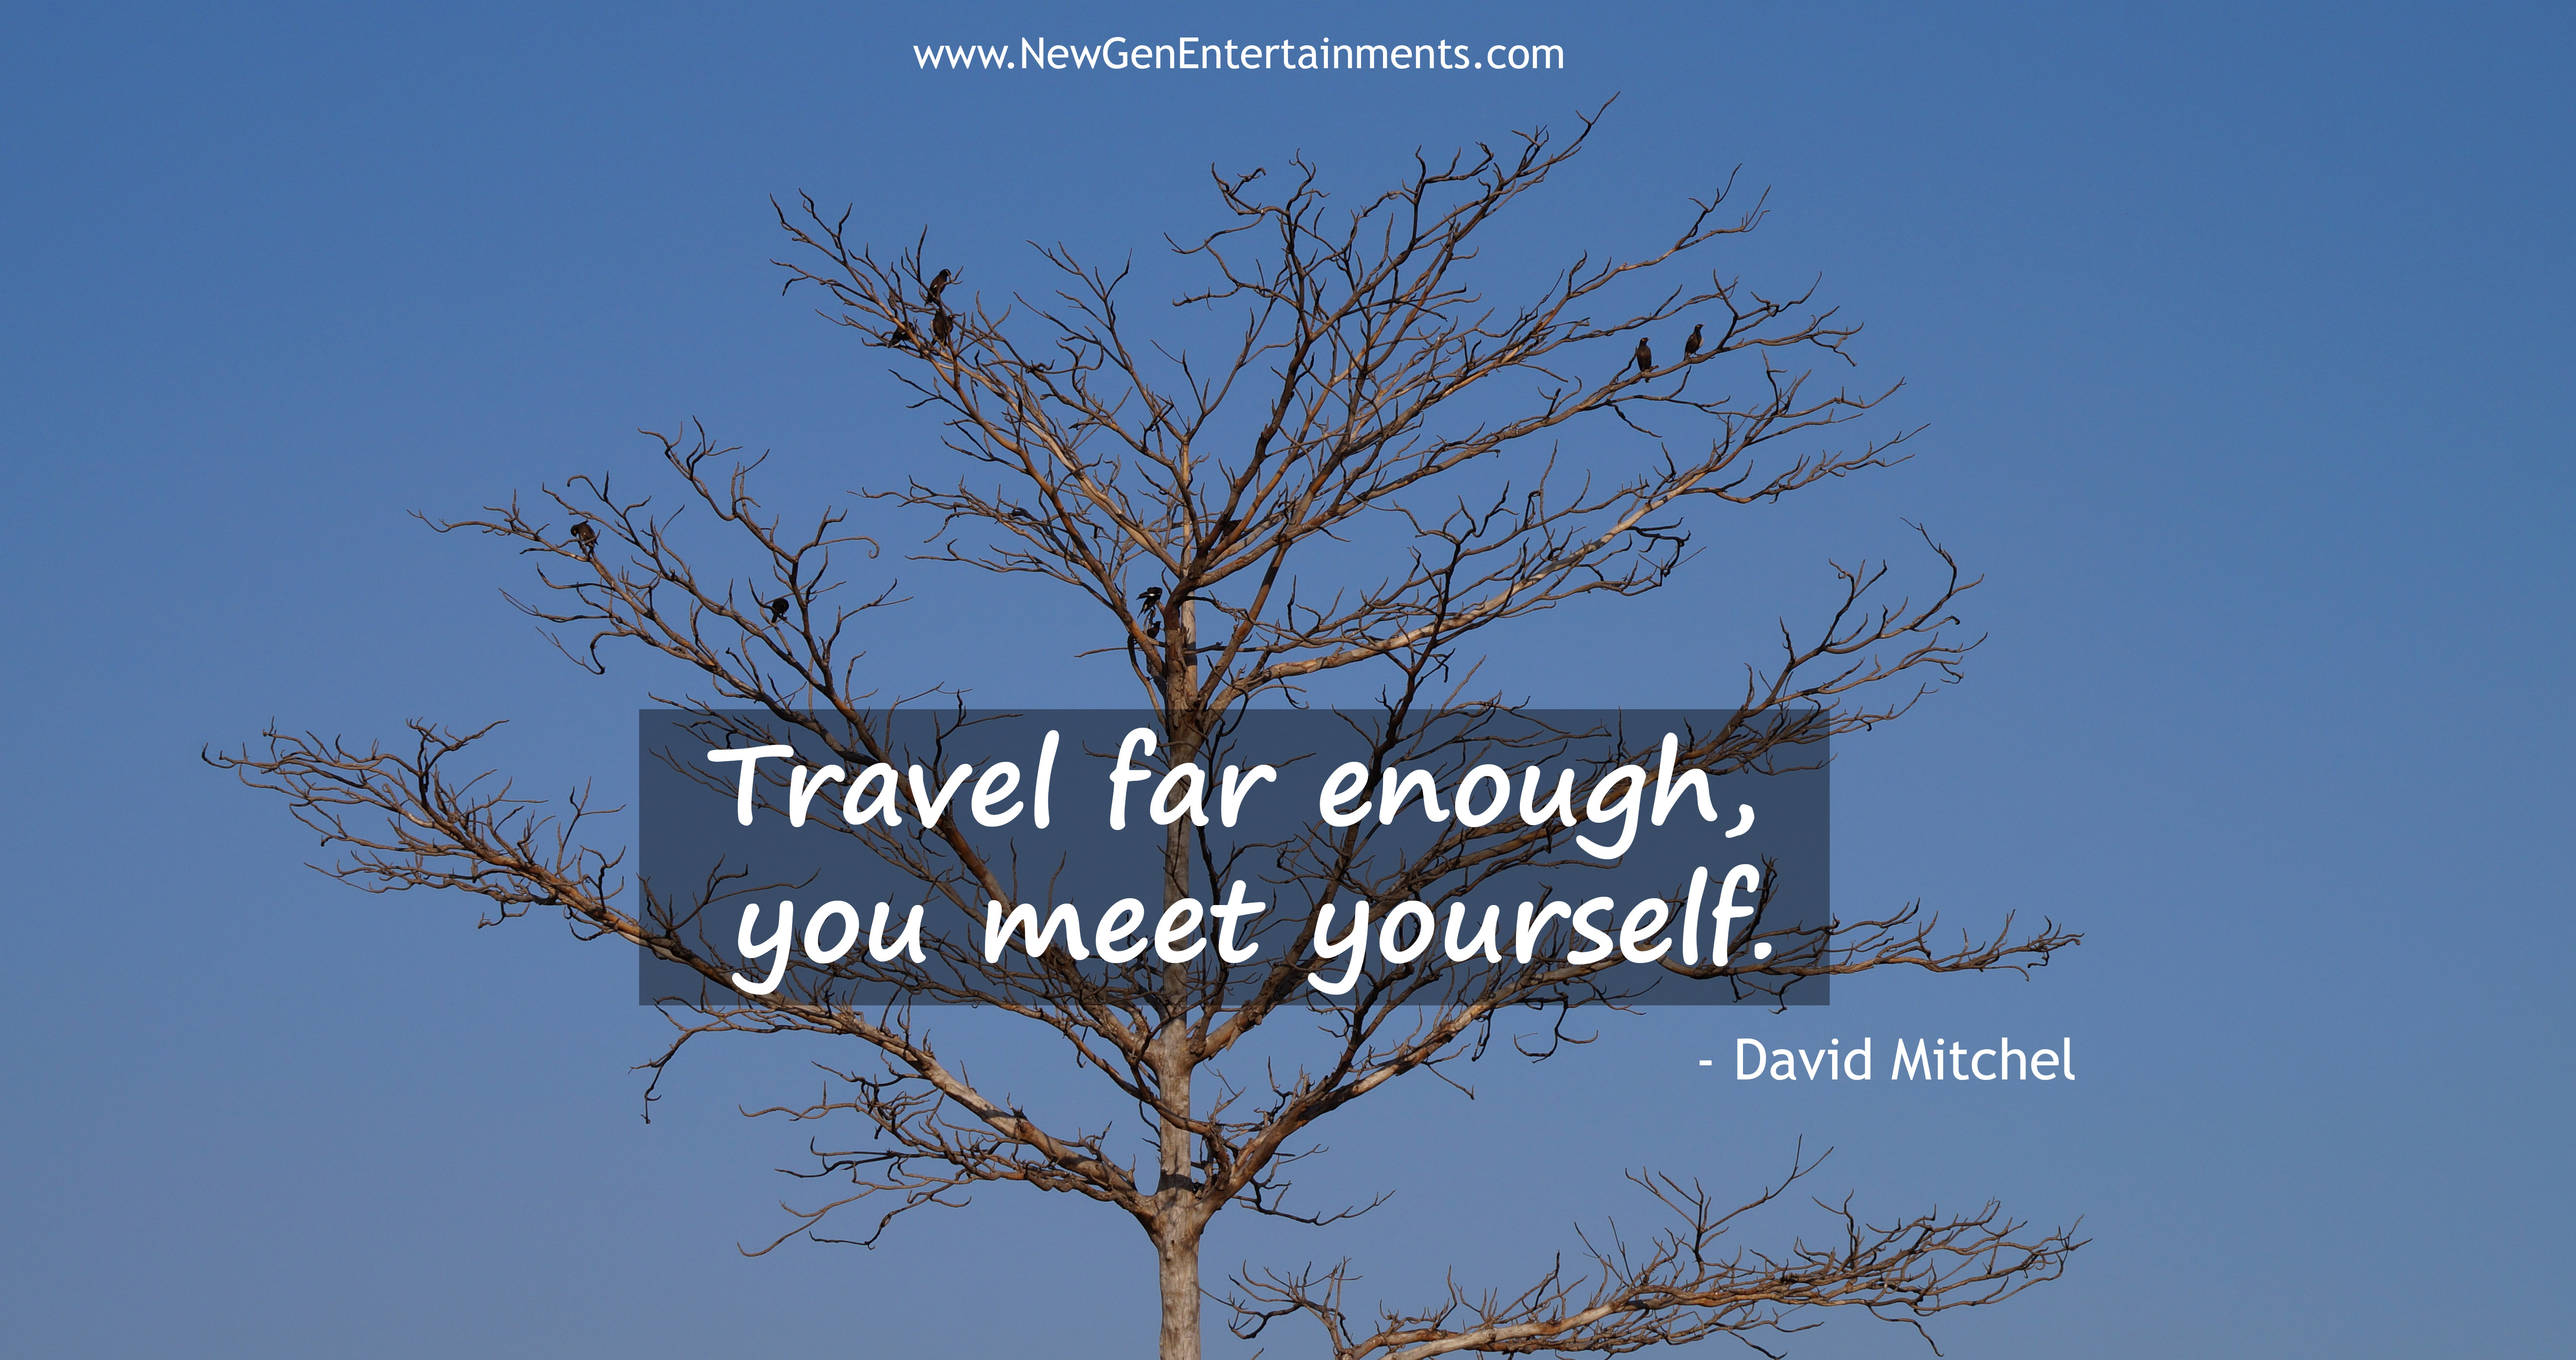 Travel far enough, you meet yourself